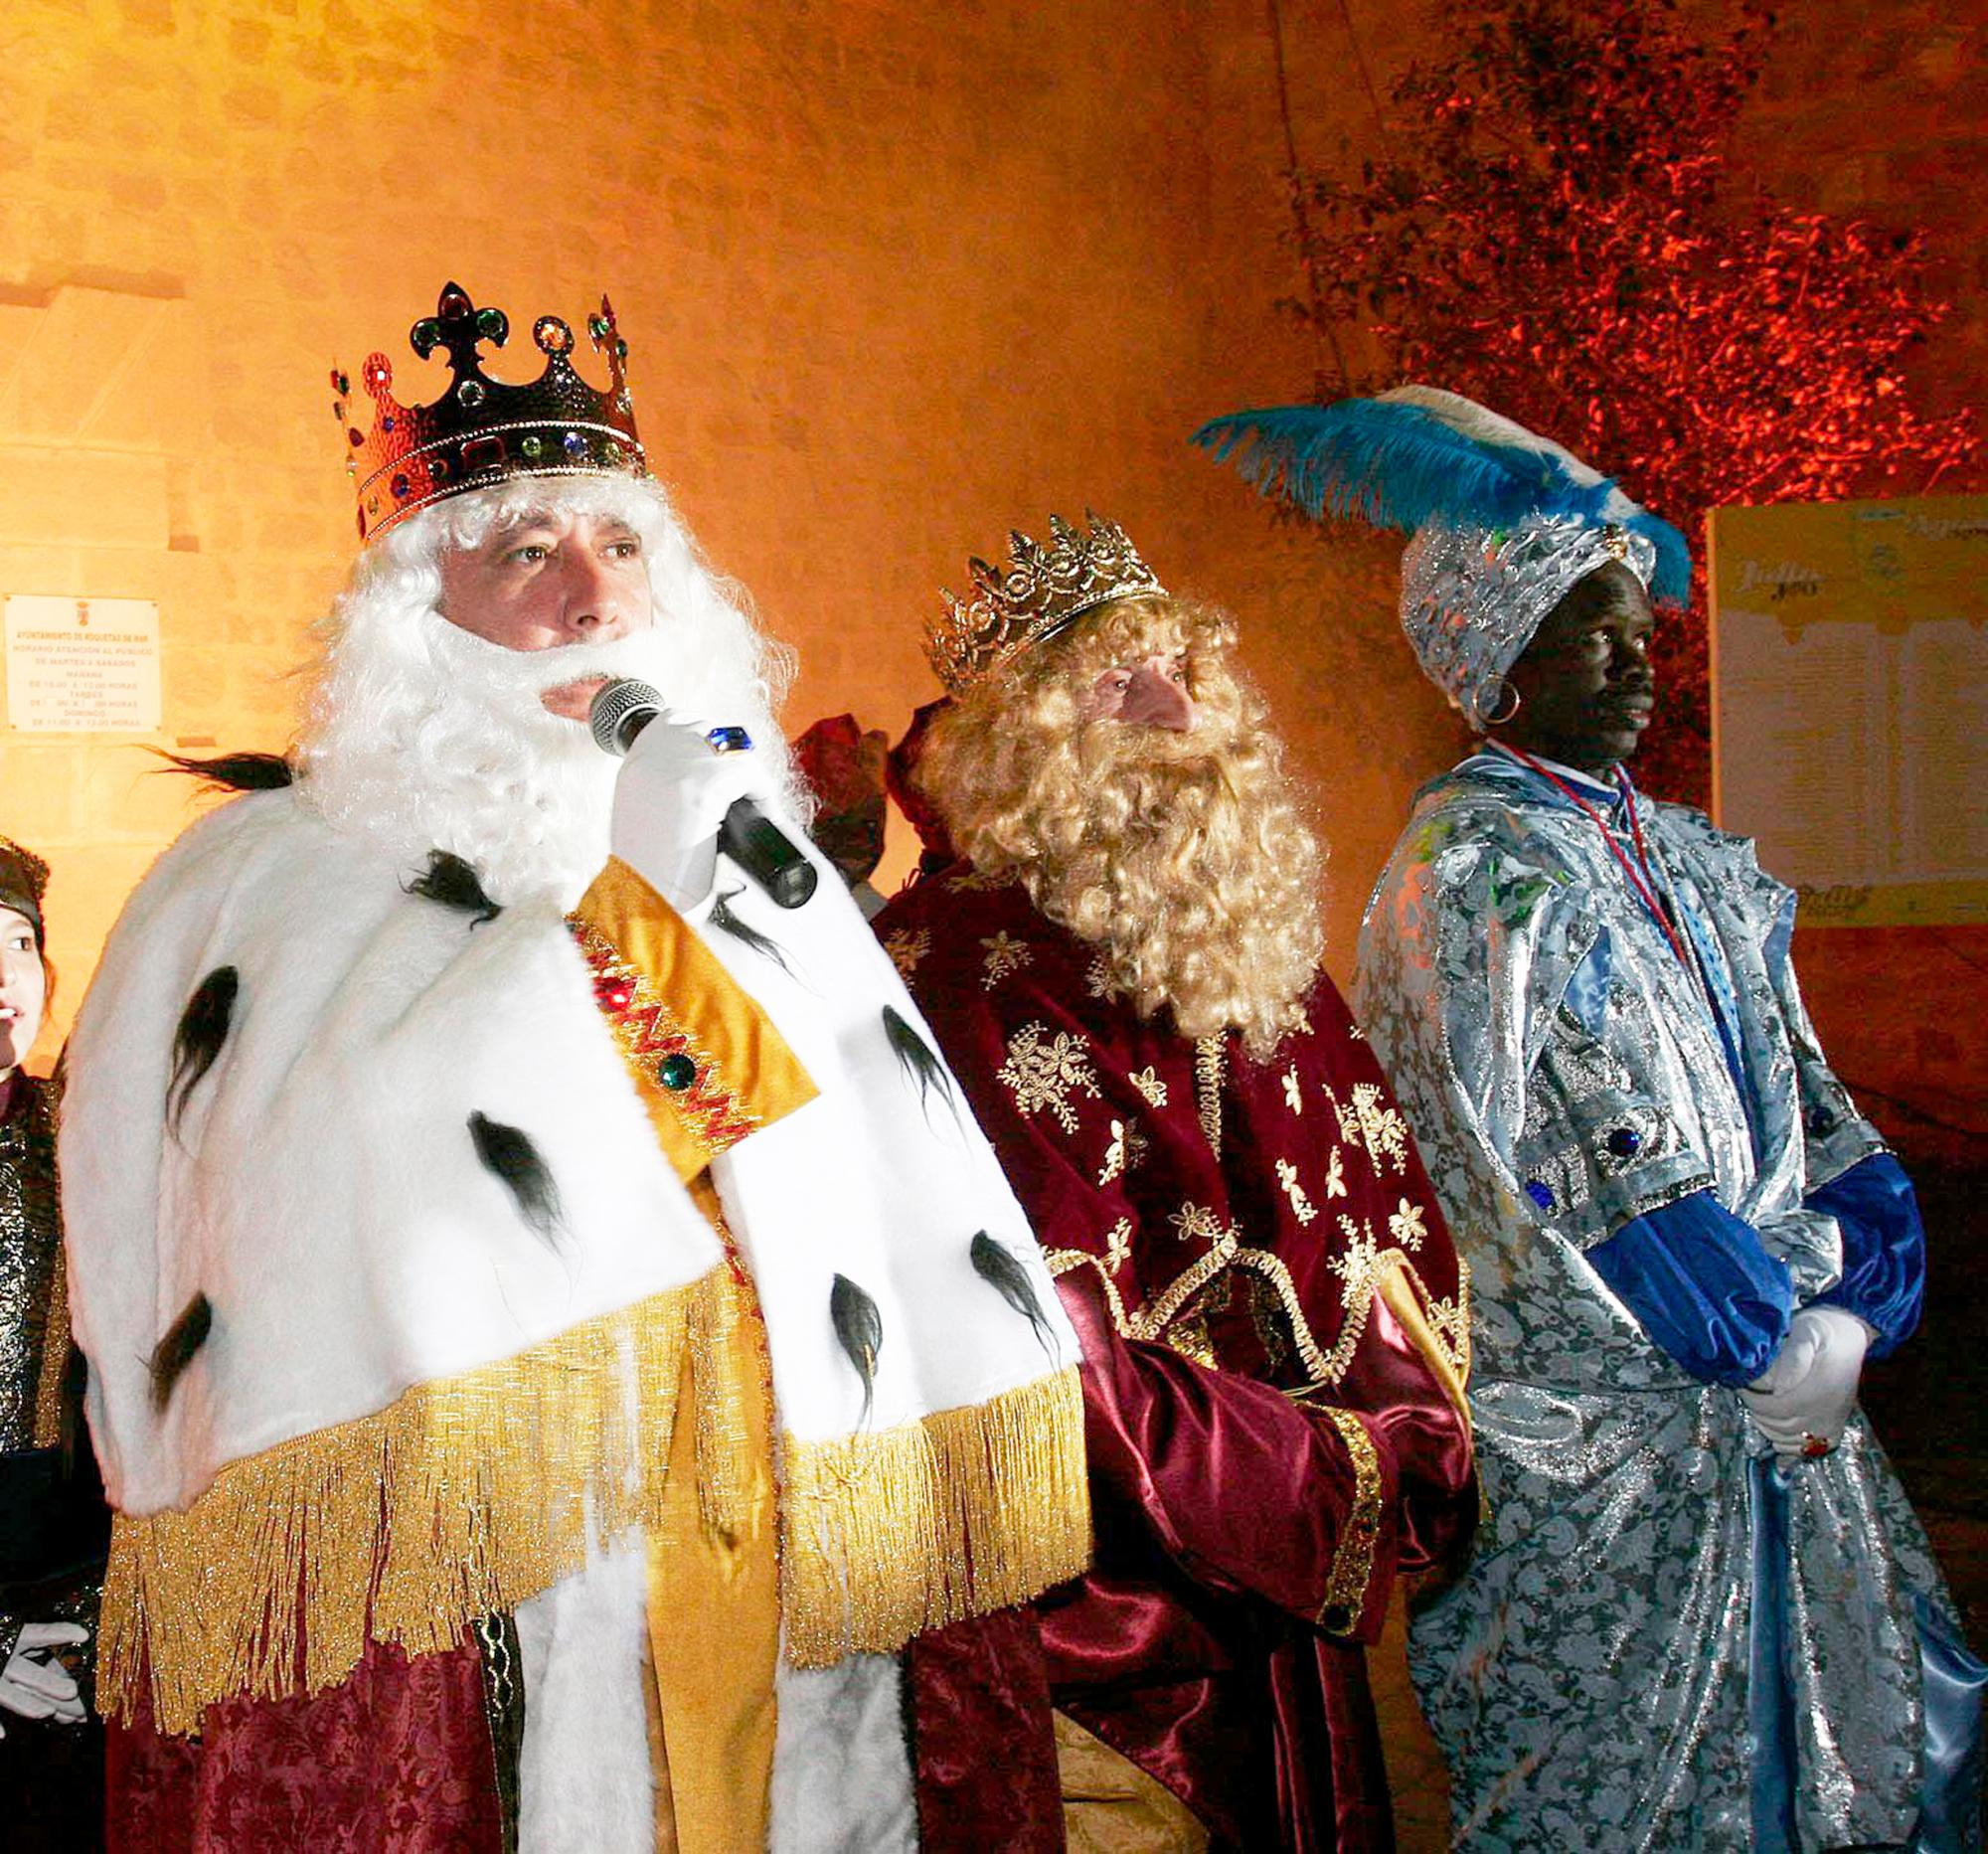 El presidente del PP andaluz, Javier Arenas (i) disfrazado como el Rey Mago Melchor, saluda, acompañado de Gaspar y Baltasar, a las decenas de personas que se han congregado en las calles almerienses de Roquetas de Mar para disfrutar de la cabalgata de los Reyes Magos.